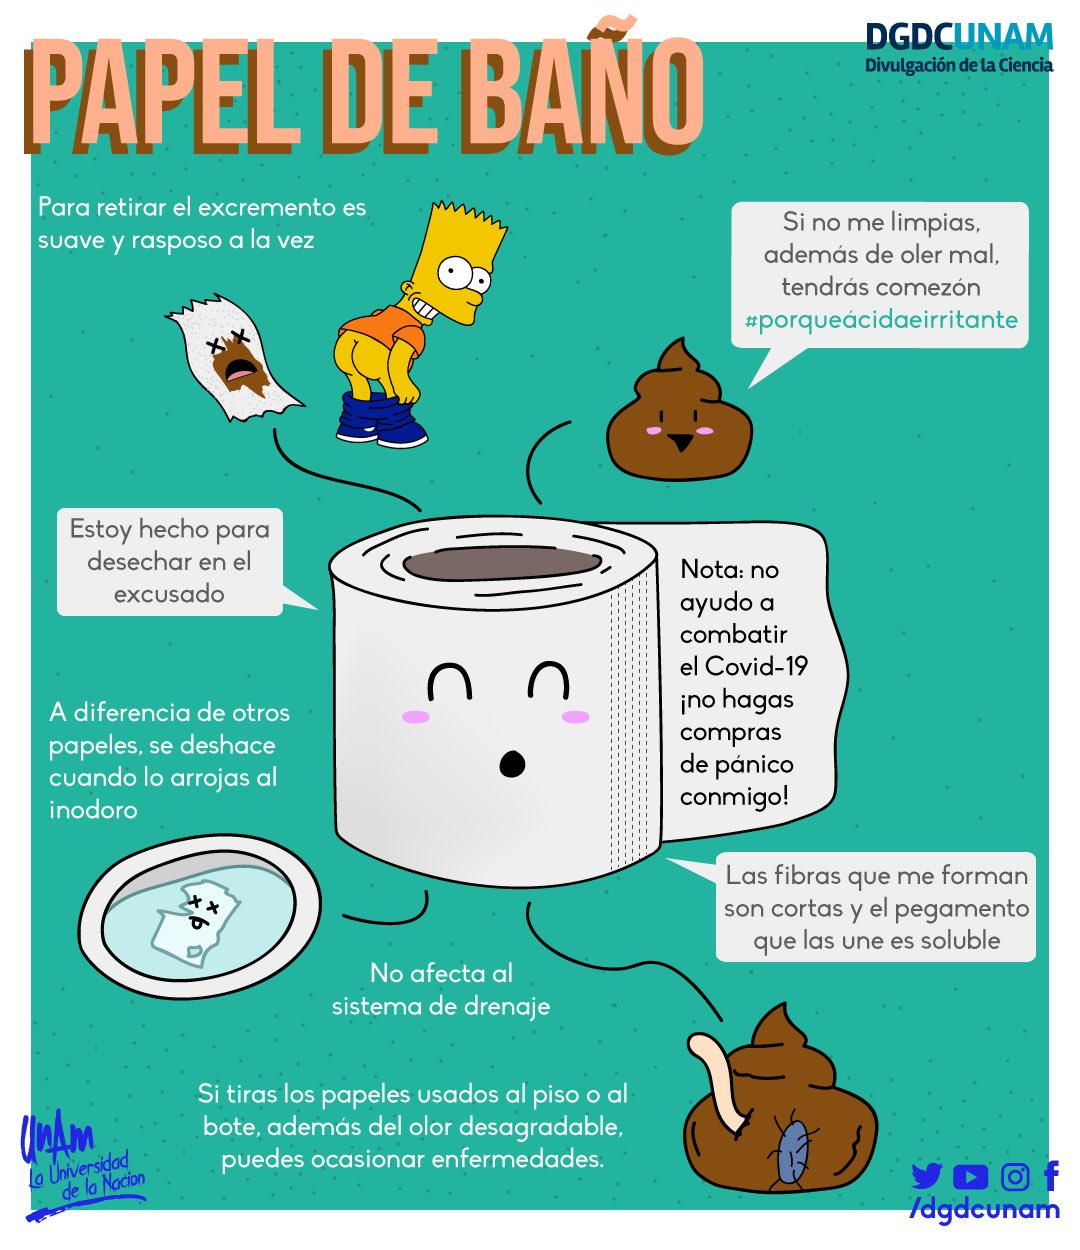 Divulgación de la Ciencia, UNAM on Twitter: "El papel de baño 🧻 no ayuda a  combatir el #COVID_19 ¡No hagas compras de pánico! La costumbre de  depositar el papel higiénico en el